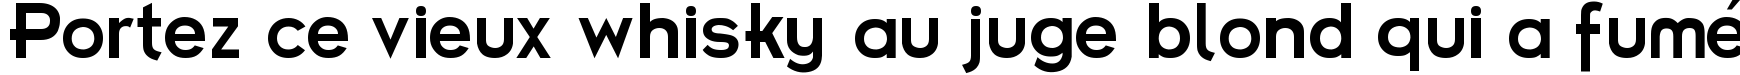 Пример написания шрифтом Futurama Bold Font текста на французском